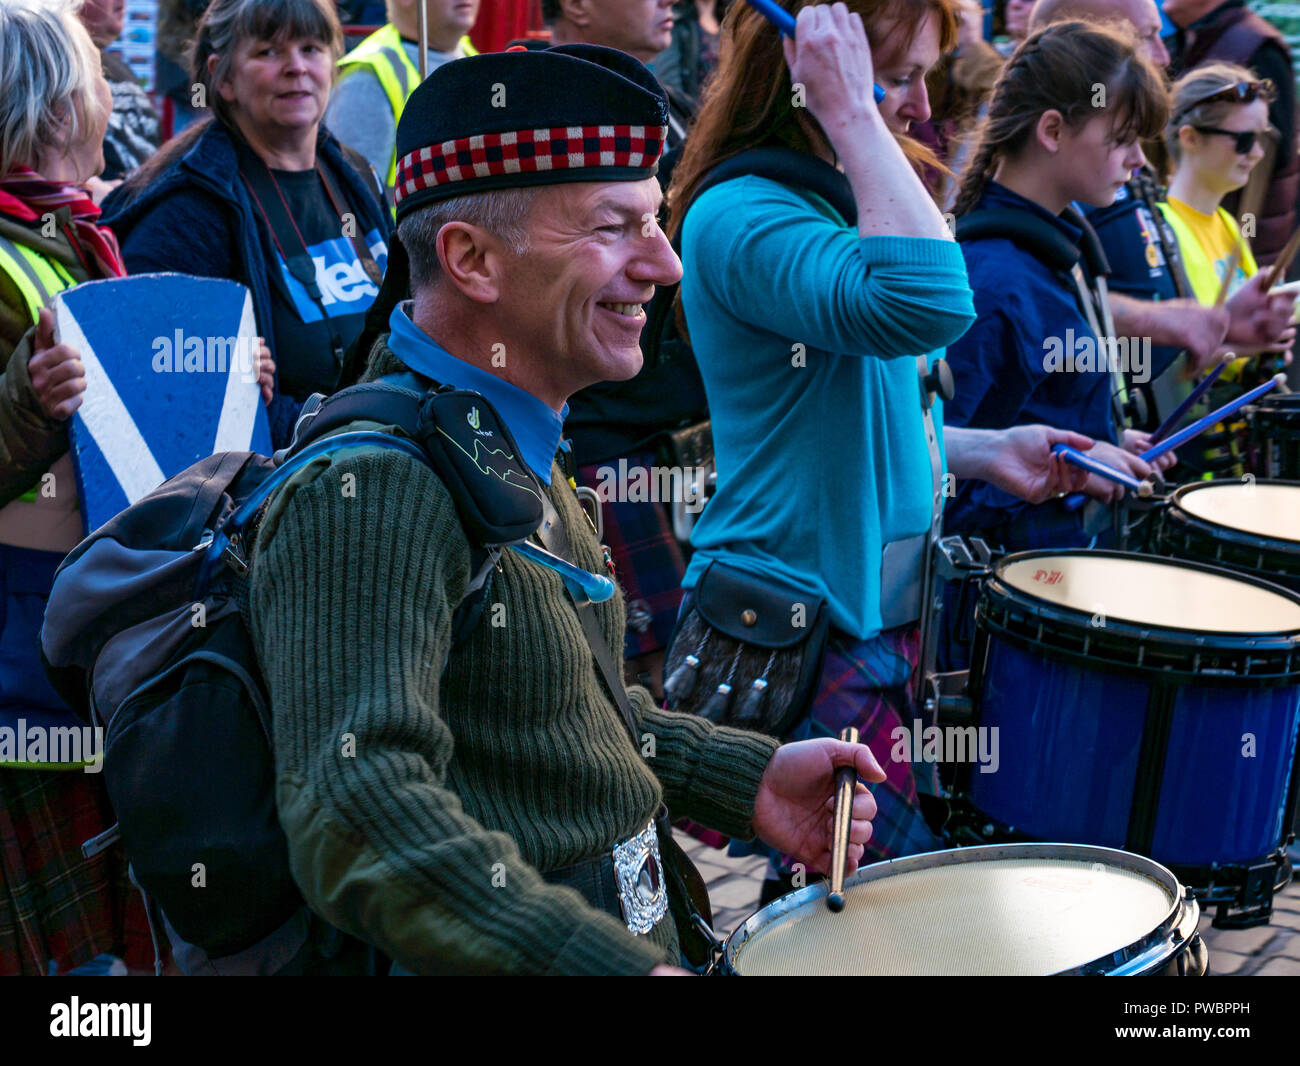 Marche à tous les batteurs sous une même bannière l'indépendance écossaise mars 2018, Royal Mile, Édimbourg, Écosse, Royaume-Uni Banque D'Images